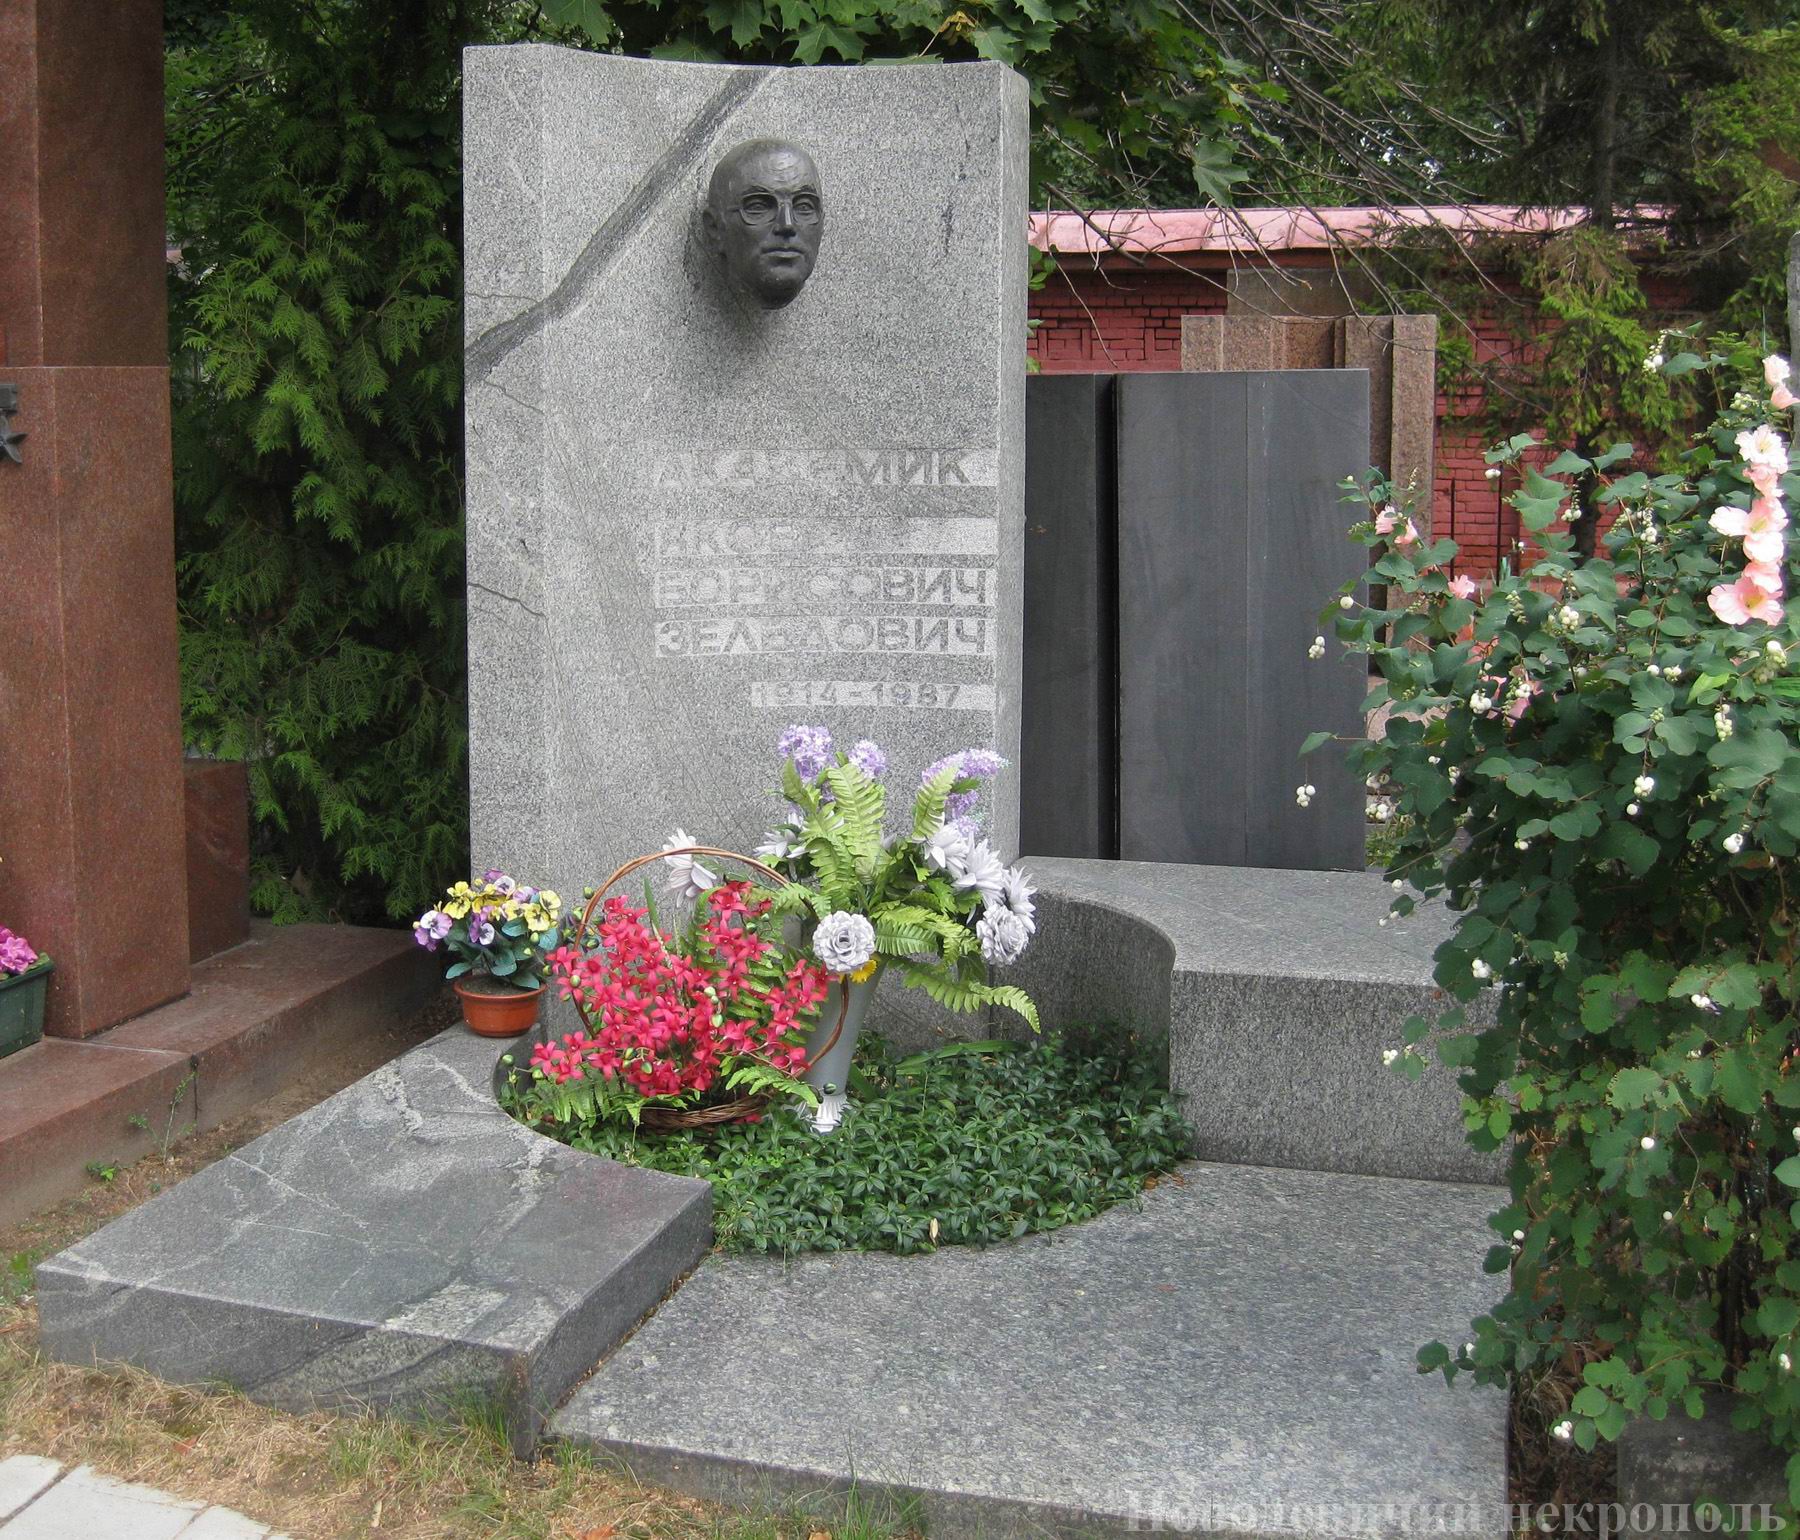 Памятник на могиле Зельдовича Я.Б. (1914–1987), ск. Е.Преображенская, арх. А.Великанов, на Новодевичьем кладбище (10–4–17).